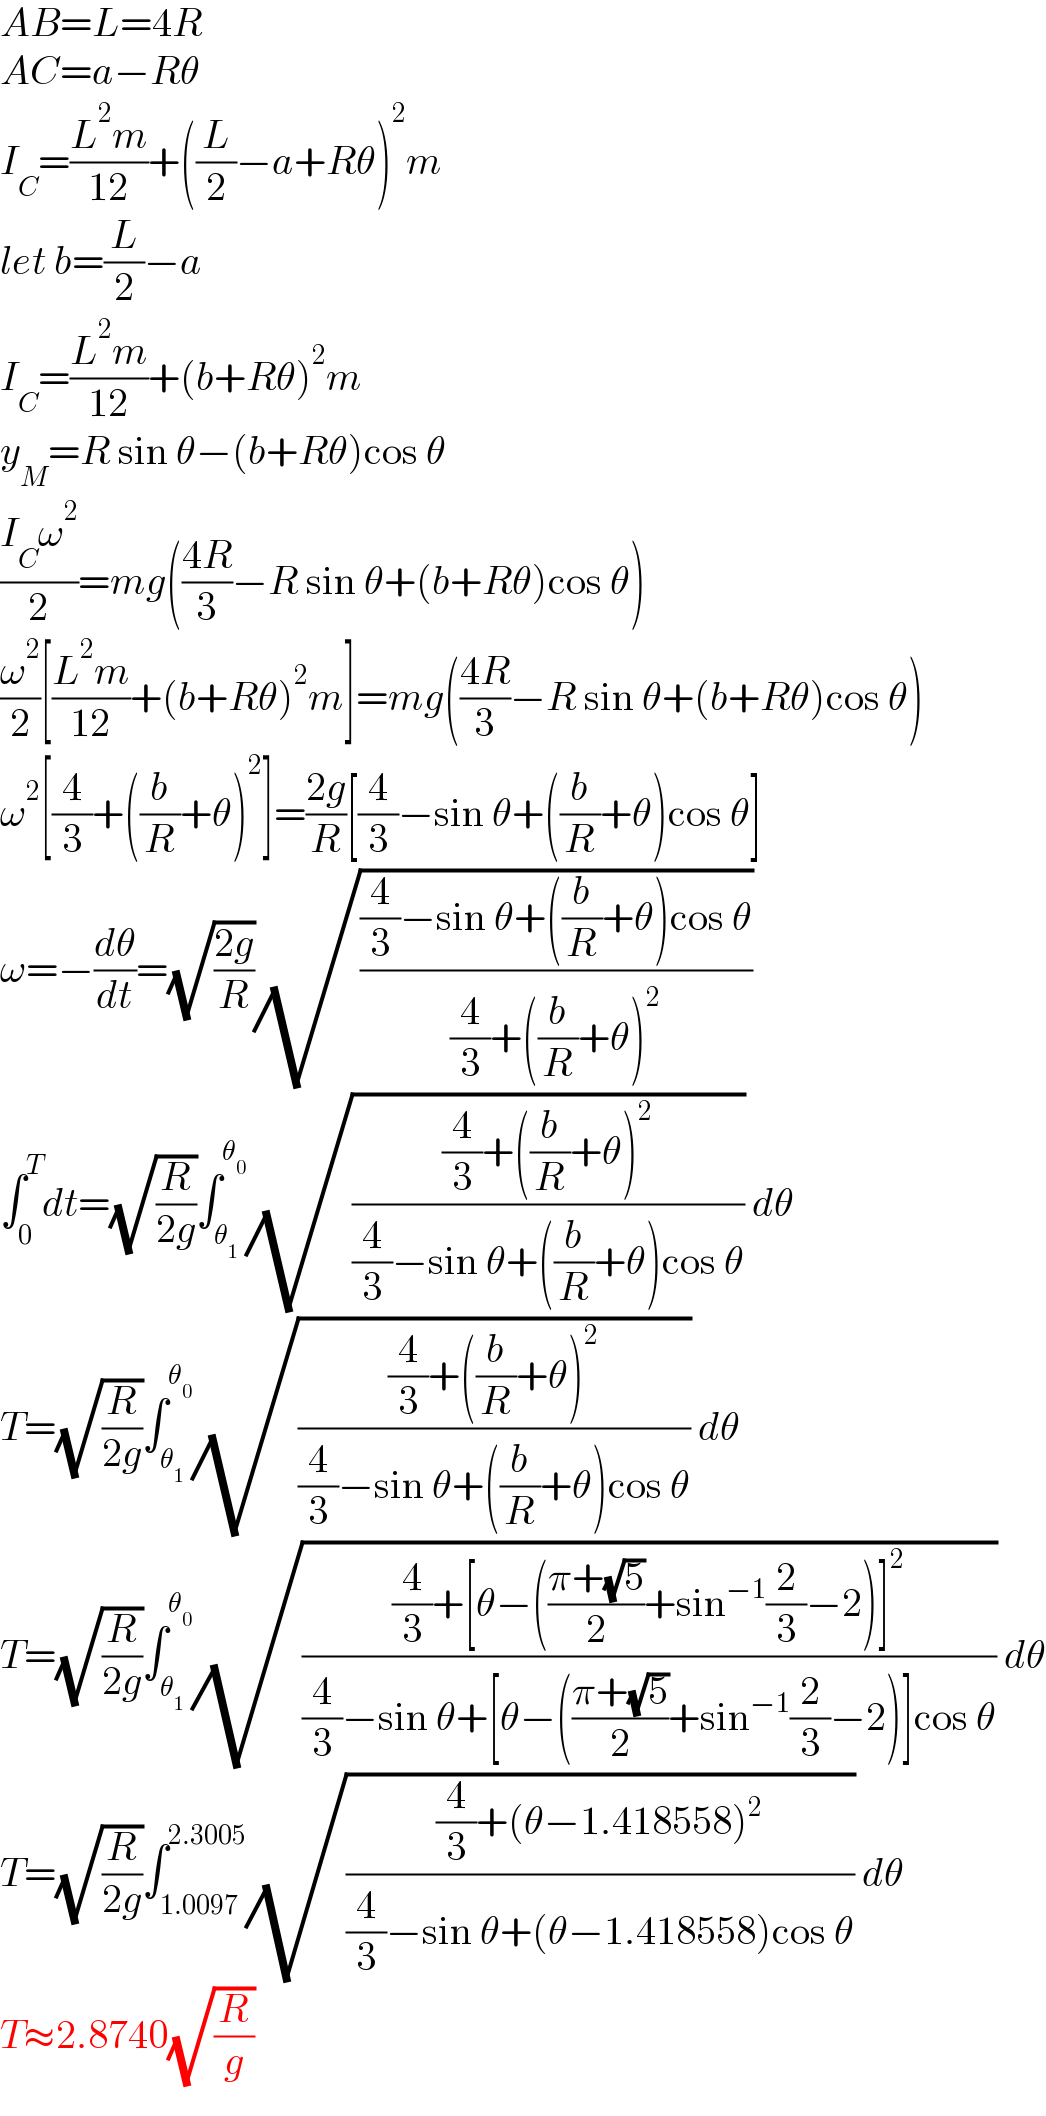 AB=L=4R  AC=a−Rθ  I_C =((L^2 m)/(12))+((L/2)−a+Rθ)^2 m  let b=(L/2)−a  I_C =((L^2 m)/(12))+(b+Rθ)^2 m  y_M =R sin θ−(b+Rθ)cos θ  ((I_C ω^2 )/2)=mg(((4R)/3)−R sin θ+(b+Rθ)cos θ)  (ω^2 /2)[((L^2 m)/(12))+(b+Rθ)^2 m]=mg(((4R)/3)−R sin θ+(b+Rθ)cos θ)  ω^2 [(4/3)+((b/R)+θ)^2 ]=((2g)/R)[(4/3)−sin θ+((b/R)+θ)cos θ]  ω=−(dθ/dt)=(√((2g)/R))(√(((4/3)−sin θ+((b/R)+θ)cos θ)/((4/3)+((b/R)+θ)^2 )))  ∫_0 ^T dt=(√(R/(2g)))∫_θ_1  ^θ_0  (√(((4/3)+((b/R)+θ)^2 )/((4/3)−sin θ+((b/R)+θ)cos θ))) dθ  T=(√(R/(2g)))∫_θ_1  ^θ_0  (√(((4/3)+((b/R)+θ)^2 )/((4/3)−sin θ+((b/R)+θ)cos θ))) dθ  T=(√(R/(2g)))∫_θ_1  ^θ_0  (√(((4/3)+[θ−(((π+(√5))/2)+sin^(−1) (2/3)−2)]^2 )/((4/3)−sin θ+[θ−(((π+(√5))/2)+sin^(−1) (2/3)−2)]cos θ))) dθ  T=(√(R/(2g)))∫_(1.0097) ^(2.3005) (√(((4/3)+(θ−1.418558)^2 )/((4/3)−sin θ+(θ−1.418558)cos θ))) dθ  T≈2.8740(√(R/g))  